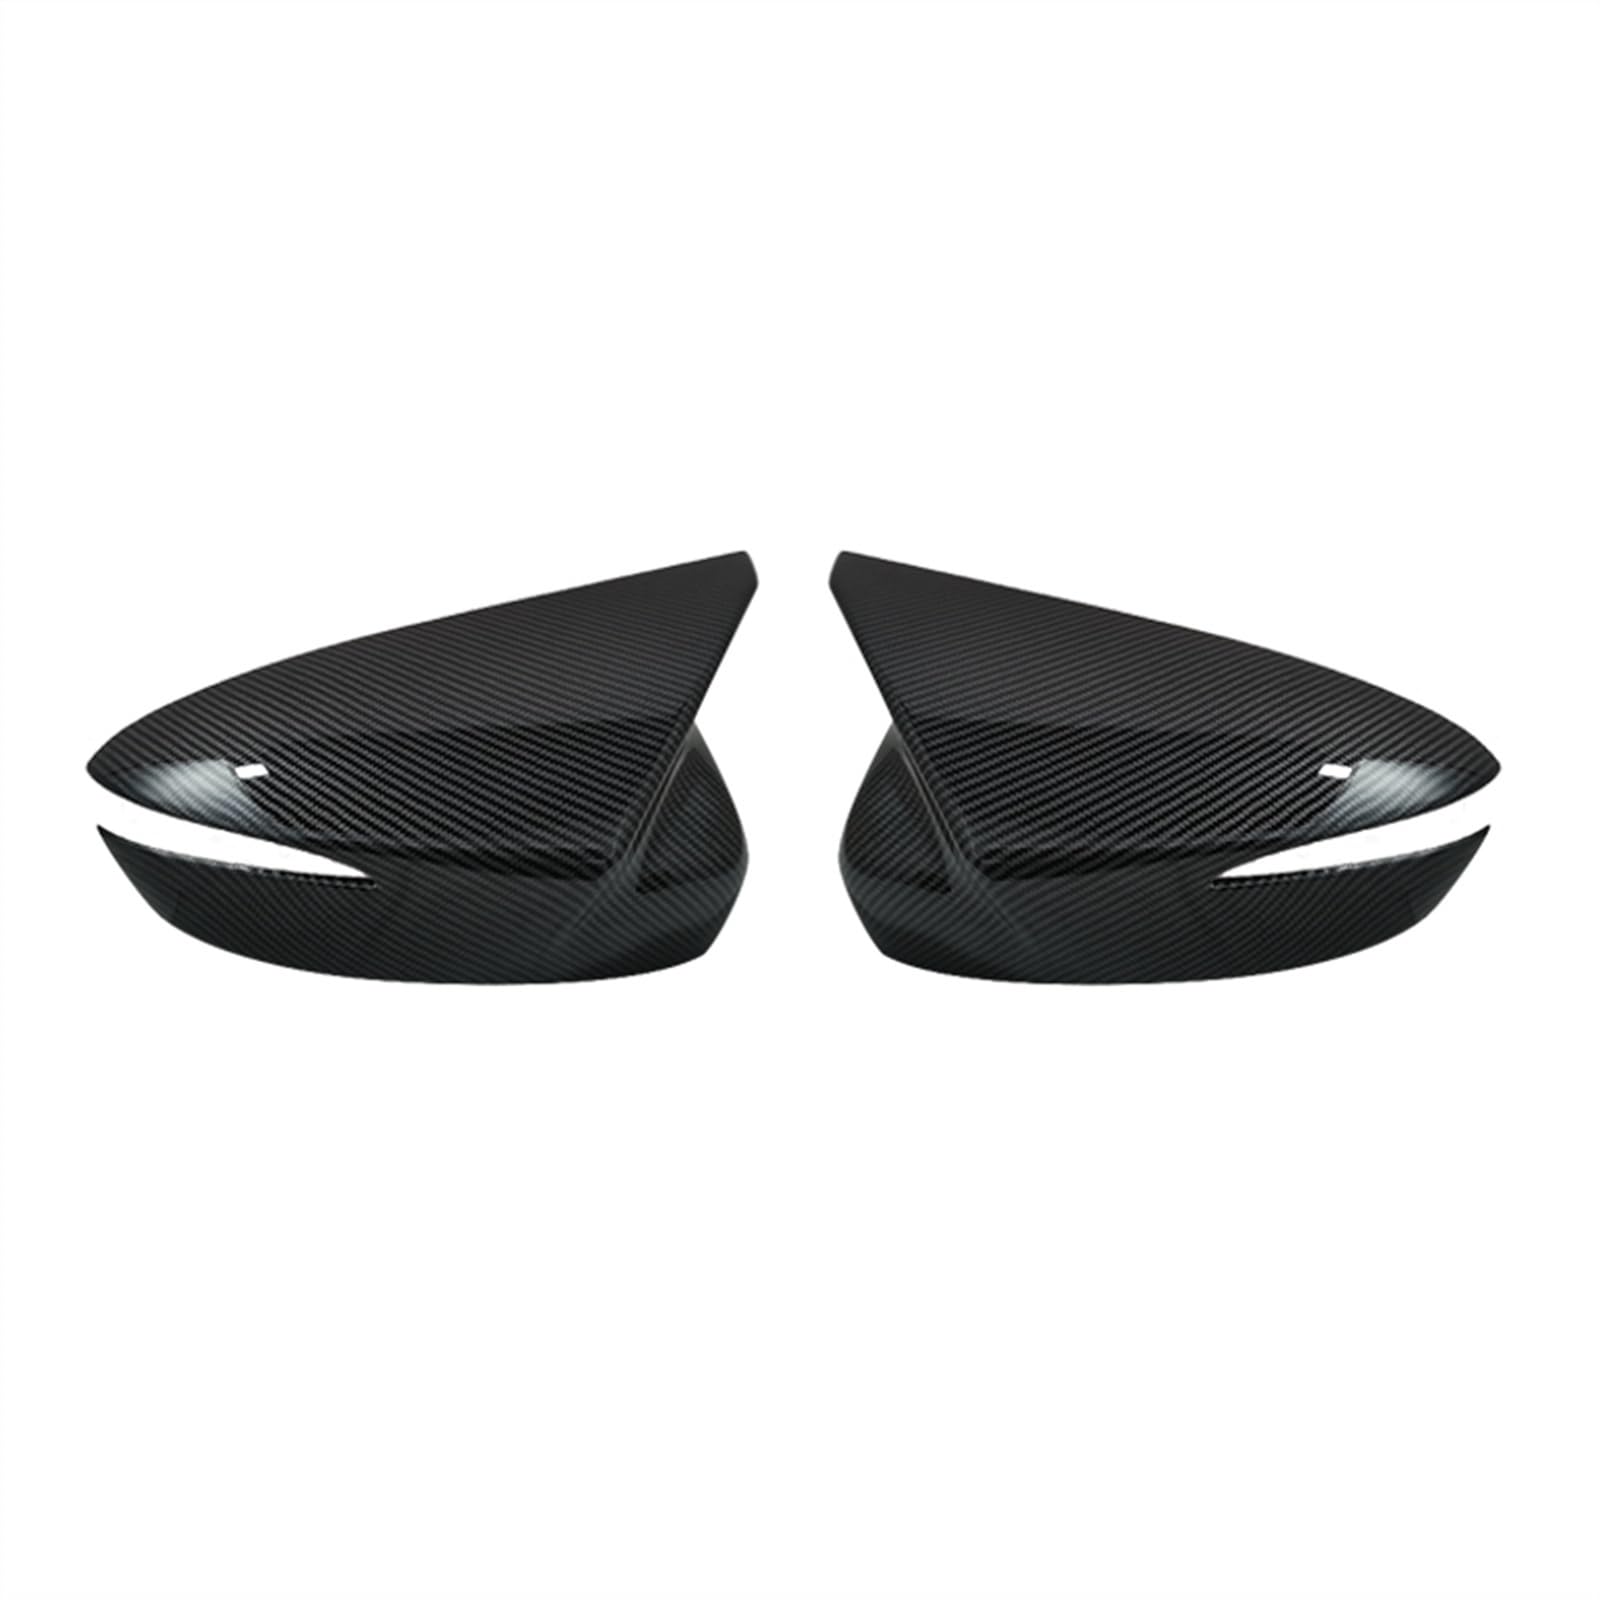 Tür Außenspiegelkappe Für Mazda Für CX-3 Für CX-4 Für CX-5 2015-2019 Auto Rückspiegel Abdeckung Spiegel Gehäuse Auto Zubehör Rückspiegelgehäuse (Größe : Carbon fiber pattern) von KWAYA